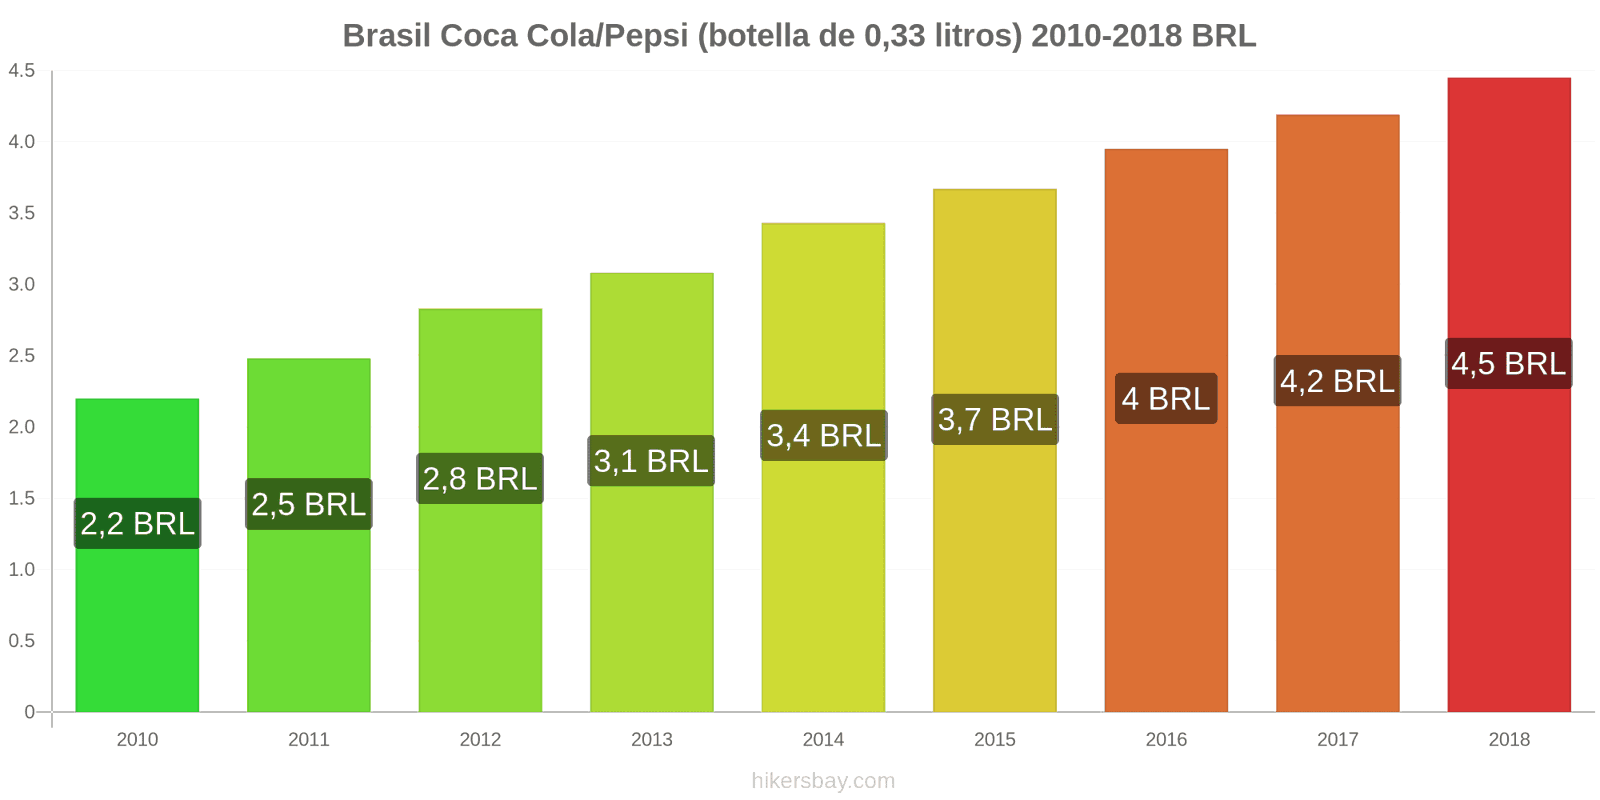 Brasil cambios de precios Coca-Cola/Pepsi (botella de 0.33 litros) hikersbay.com